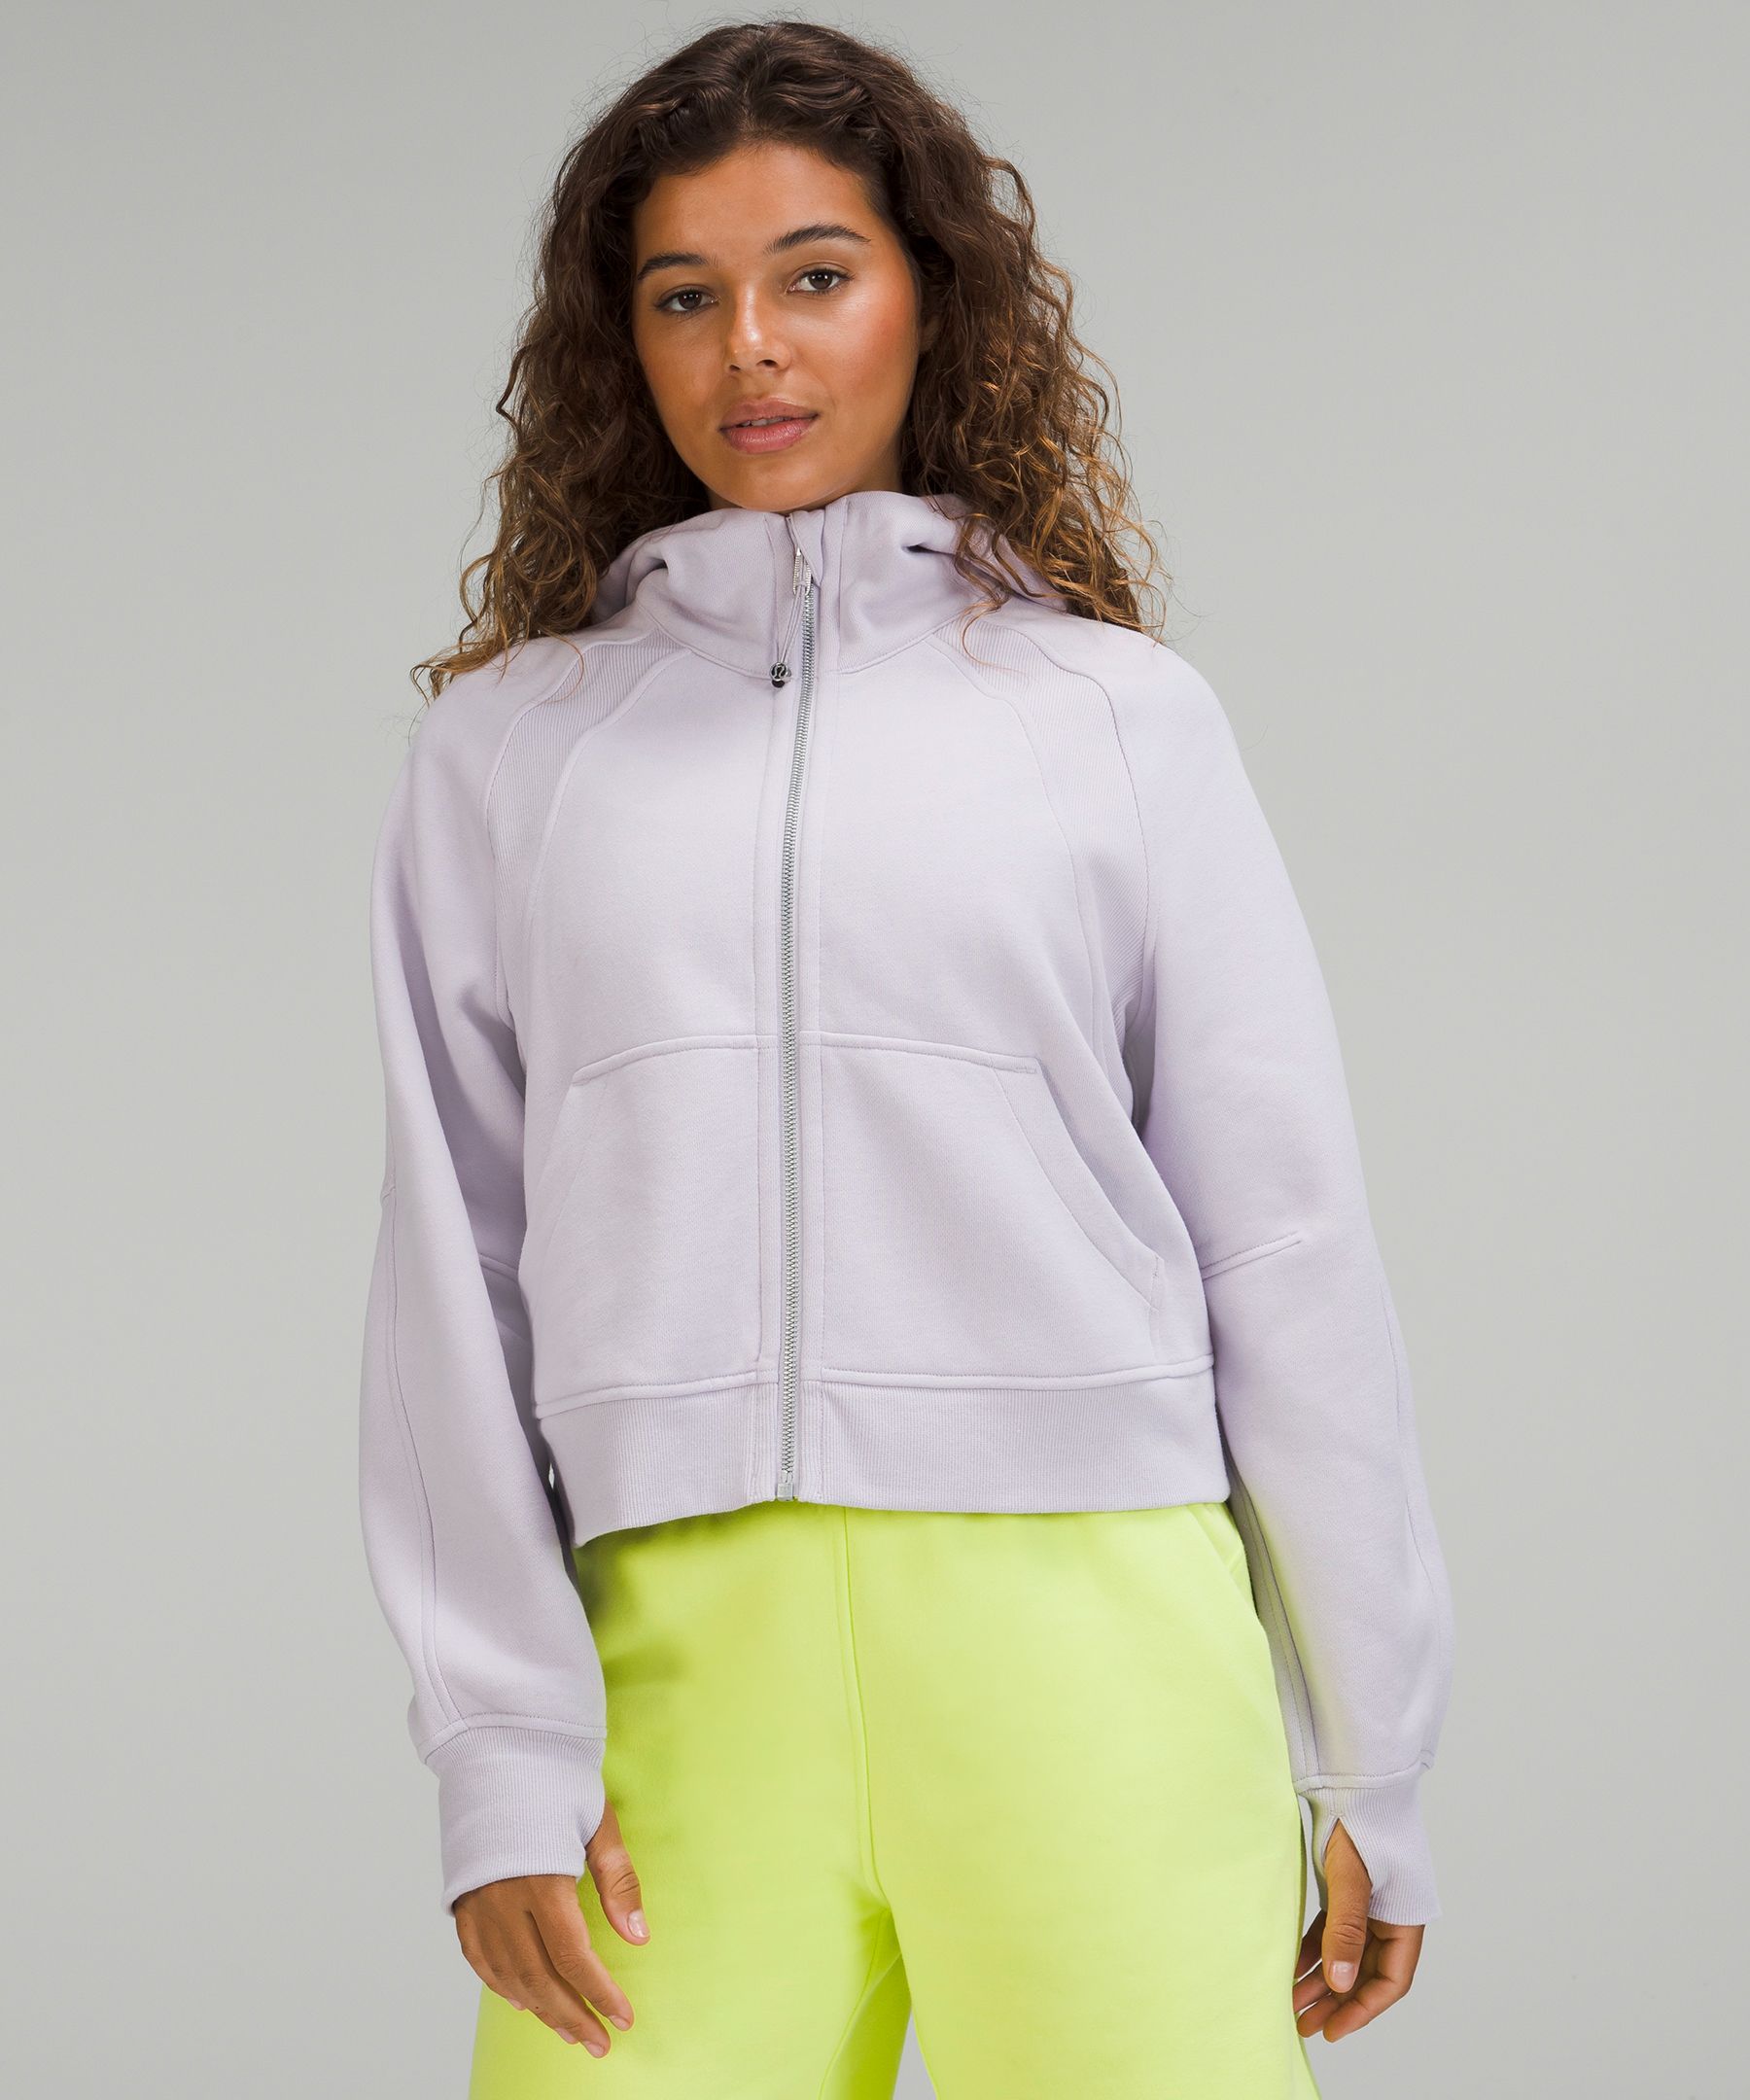 Scuba Oversized Full Zip Hoodie | Women's Hoodies & Sweatshirts 